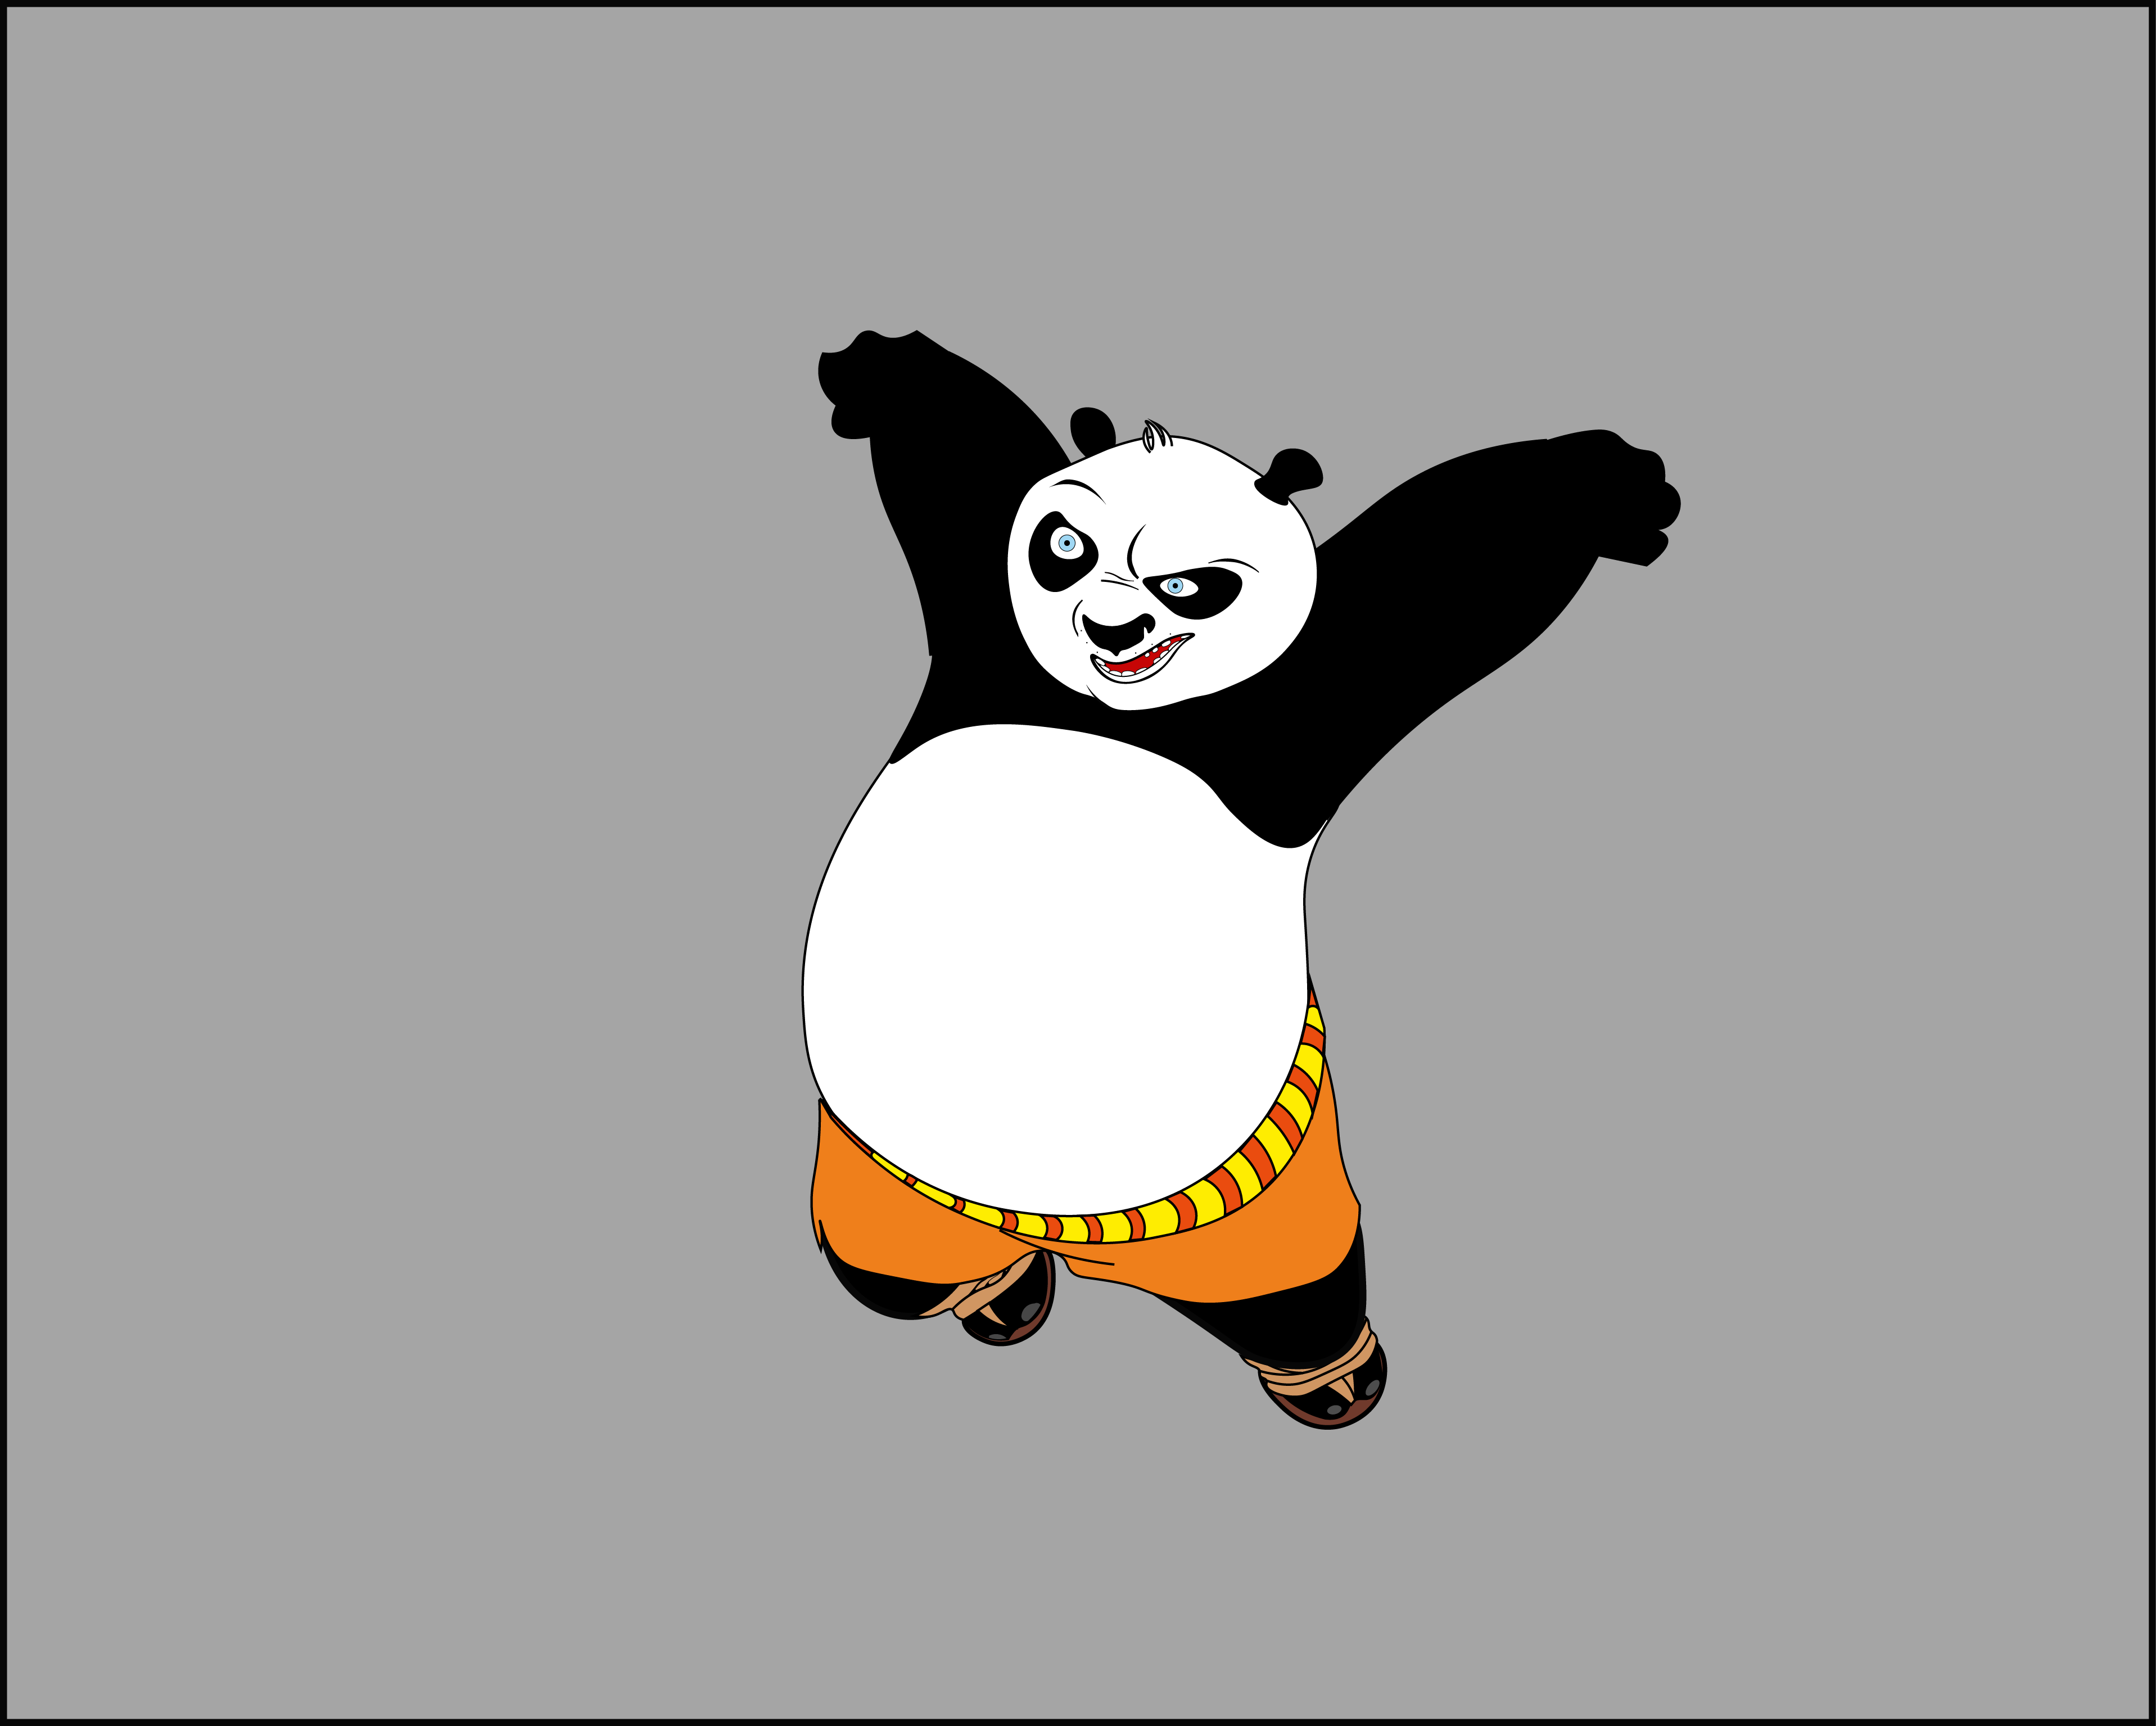 功夫熊猫1的演员有哪些 - 匠子生活